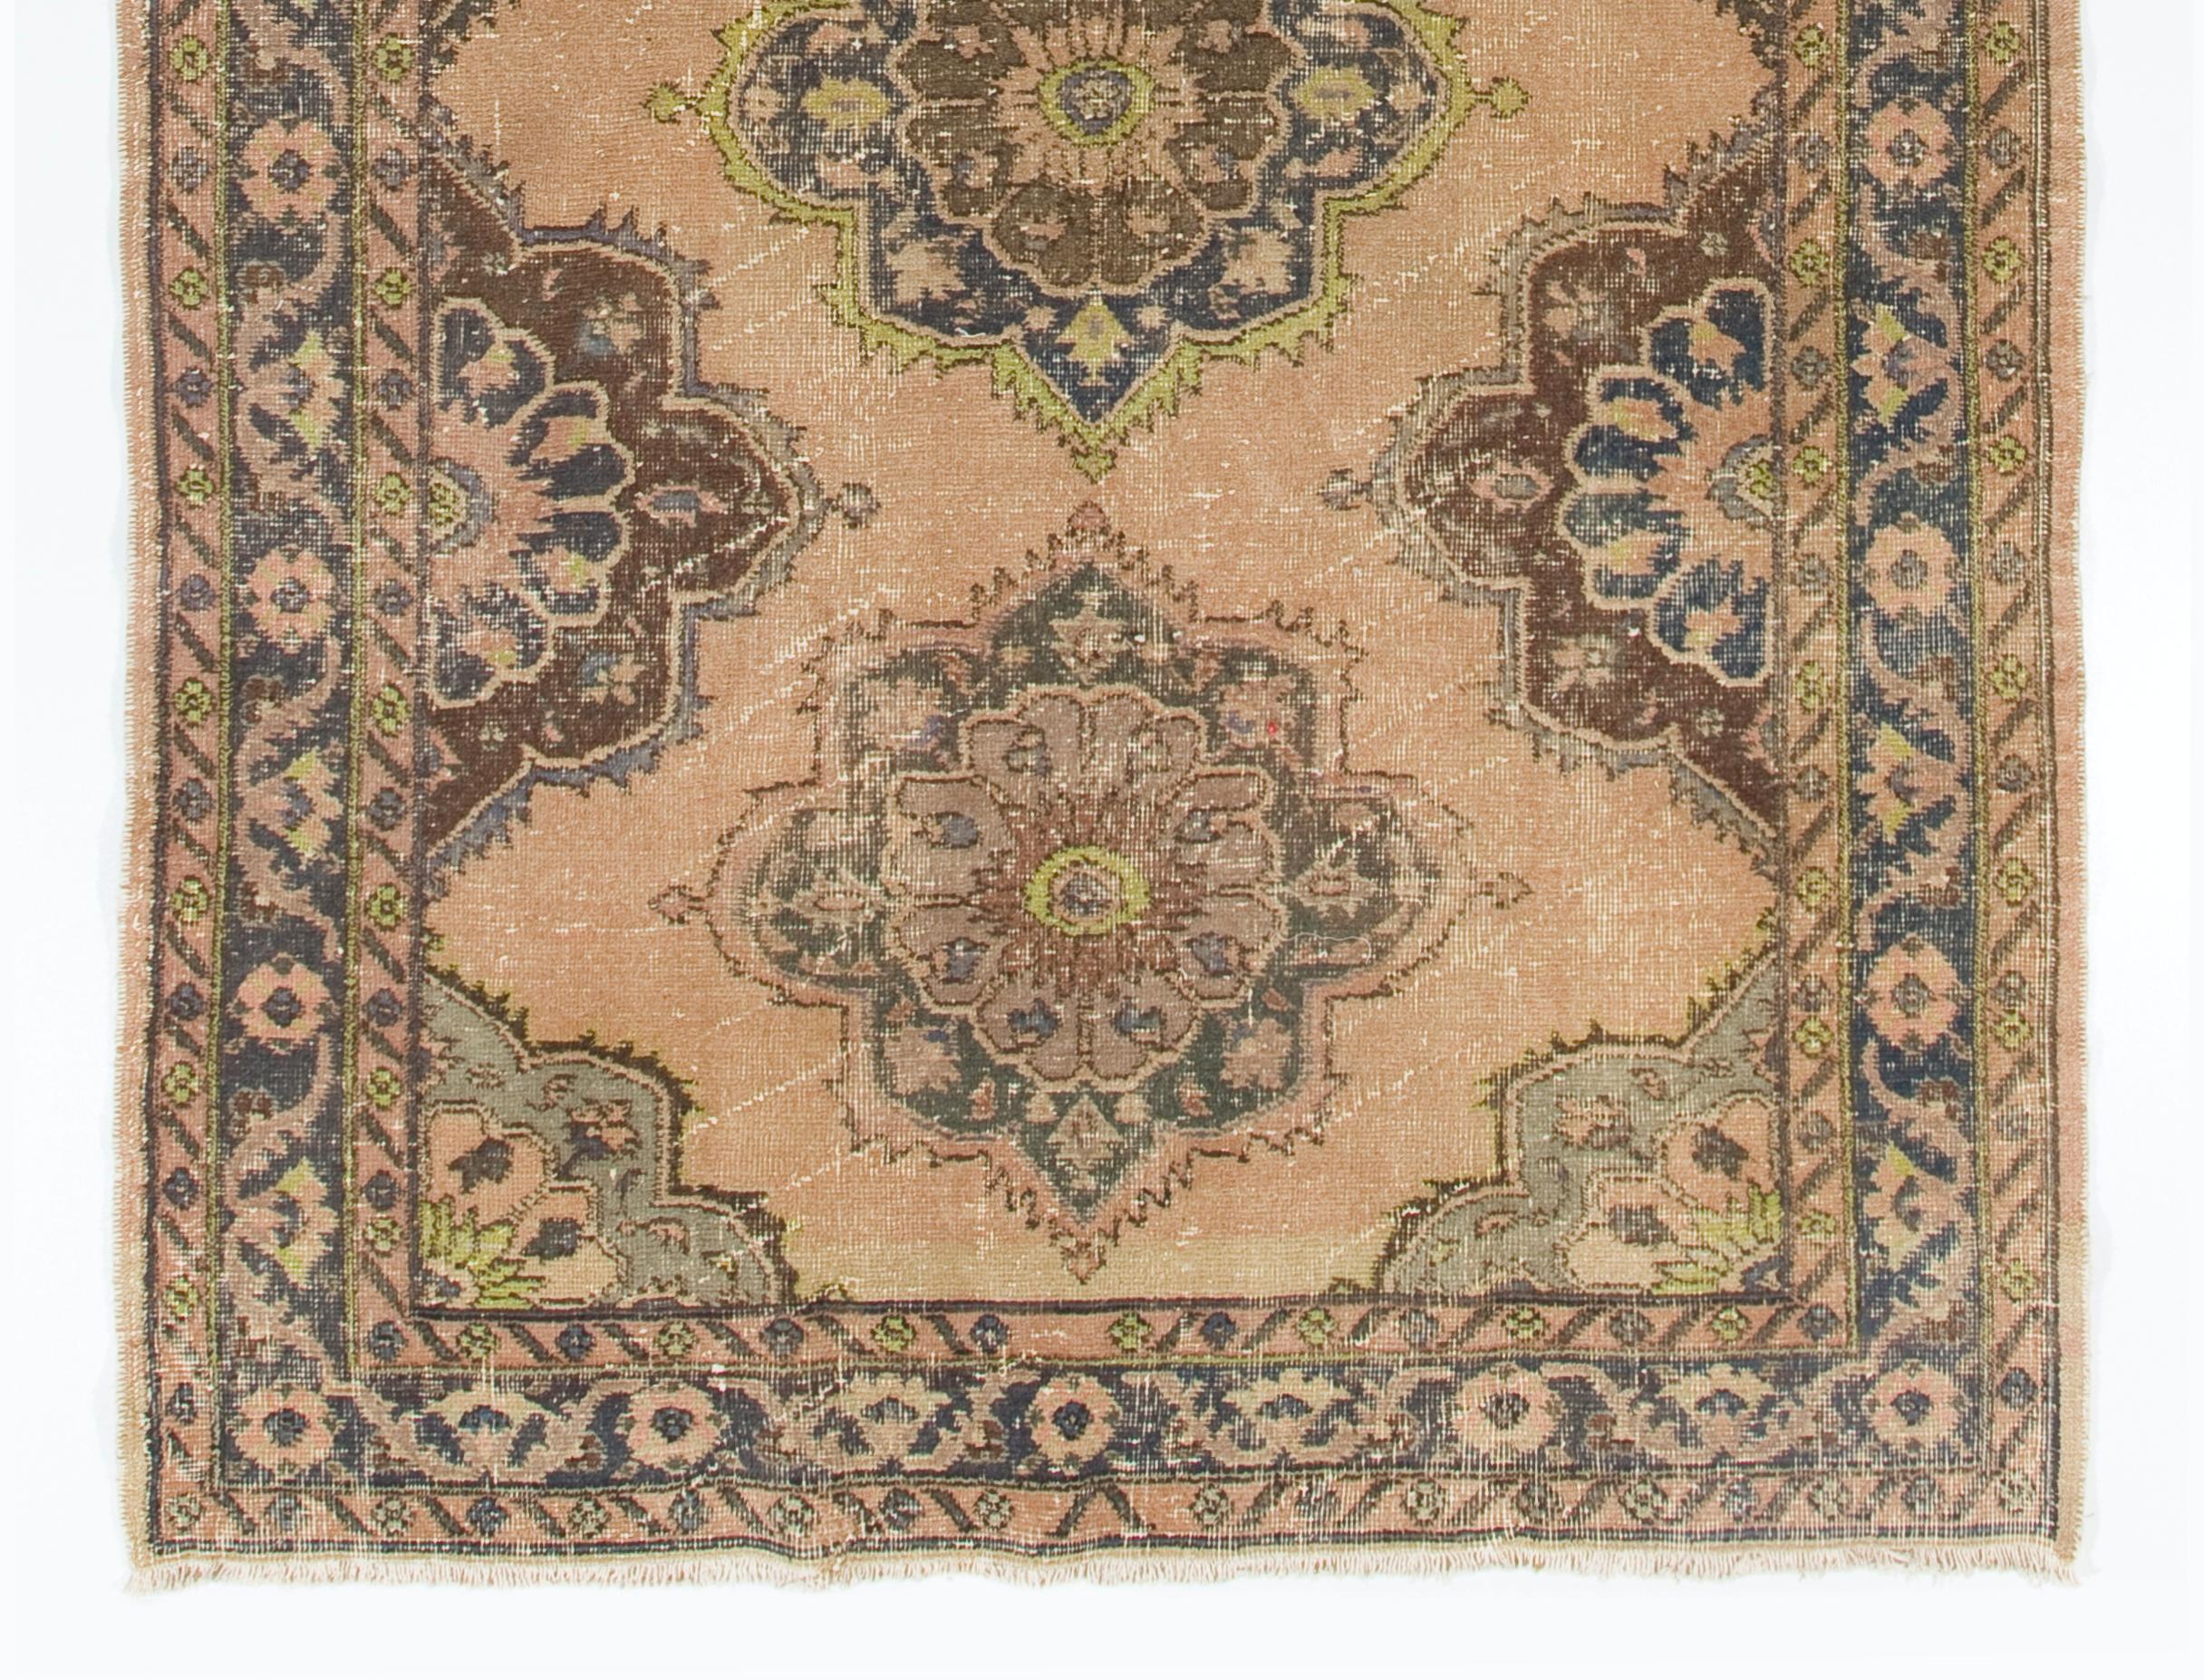 5x12.2 Ft Vintage Oushak Runner Rug in Beige, Handmade Turkish Corridor Carpet In Good Condition For Sale In Philadelphia, PA